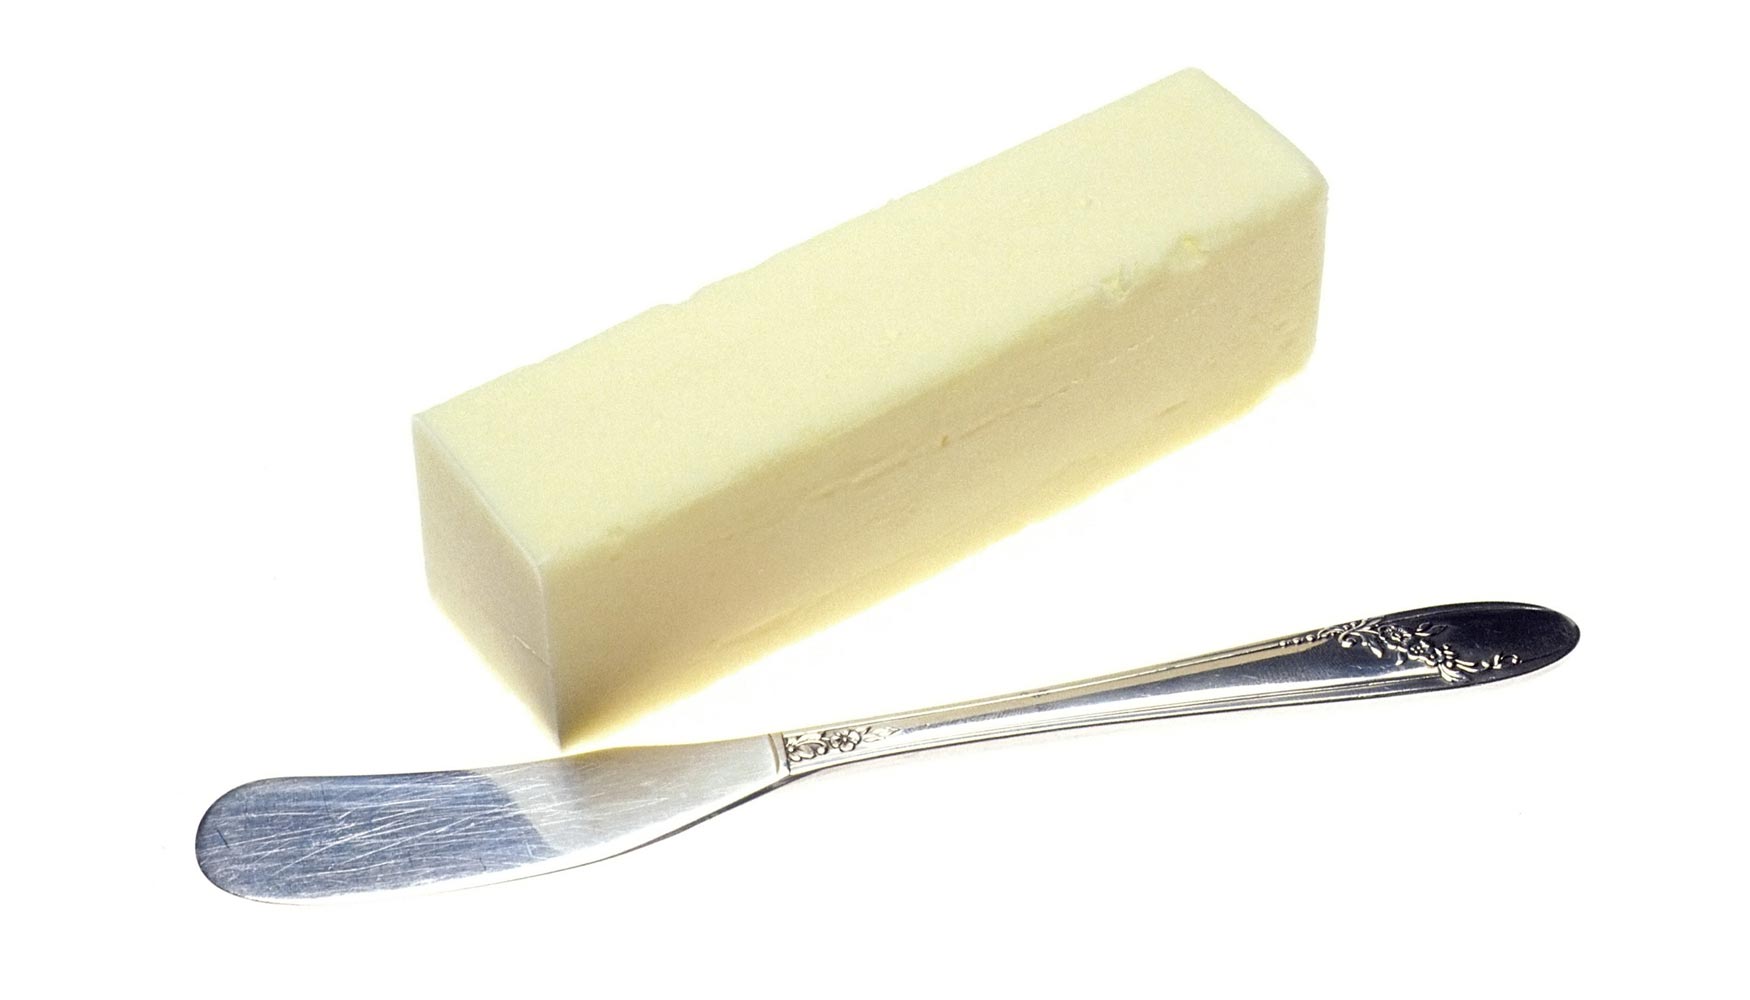 La bollera elaborada con mantequilla est viendo aumentado su consumo al concebirse como producto ms natural